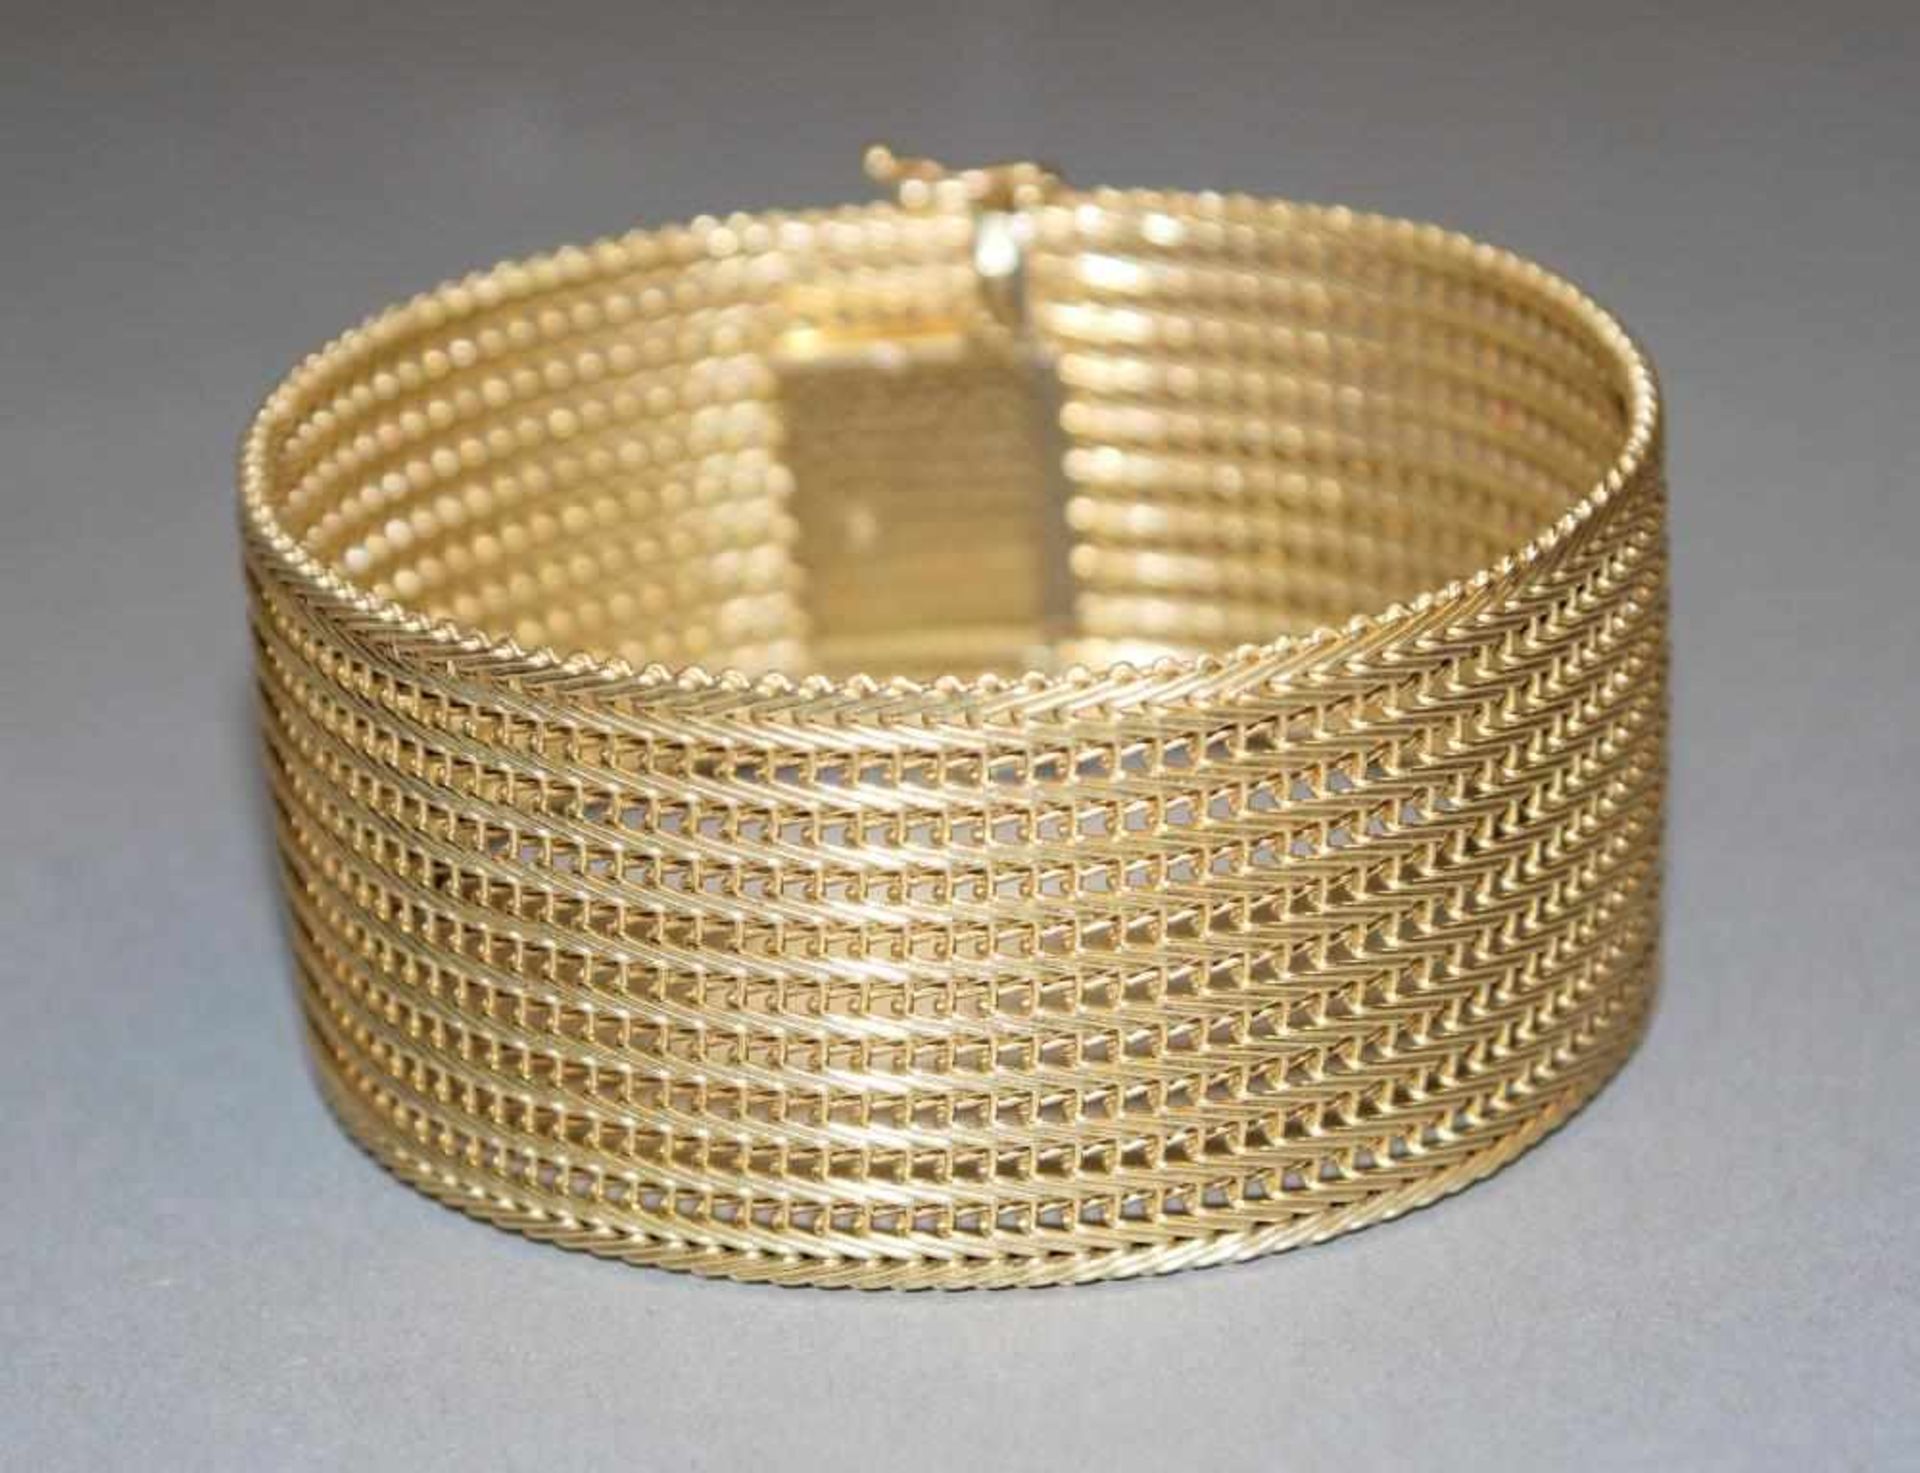 Gliederarmband, Gold, 1950er/60er Jahre 14kt Gelbgold, Milanaise-Art, breit, Sicherheitshäkchen,